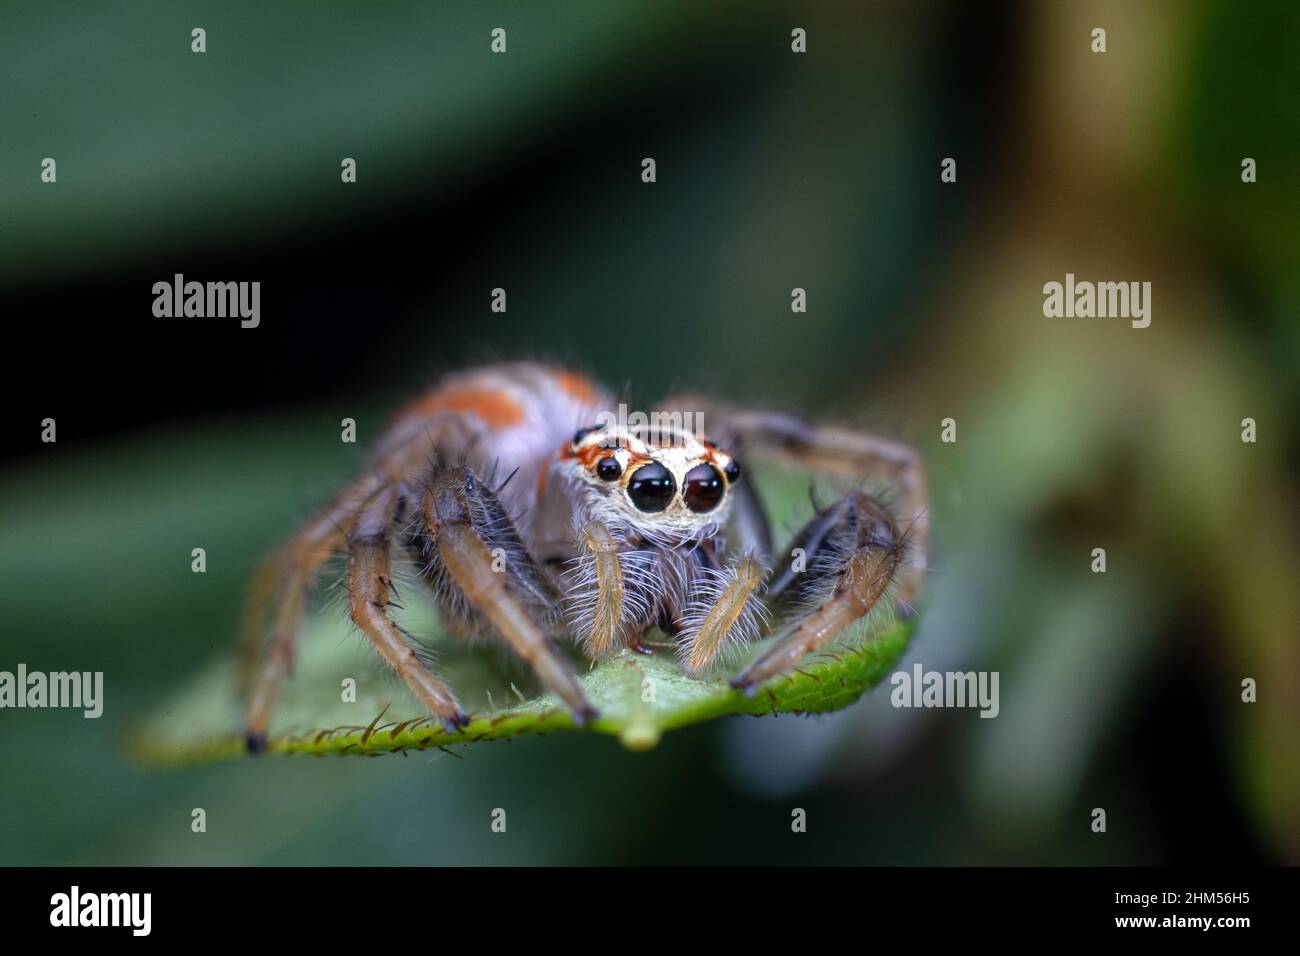 Chongqing Mountain écologique - araignées sautant Banque D'Images